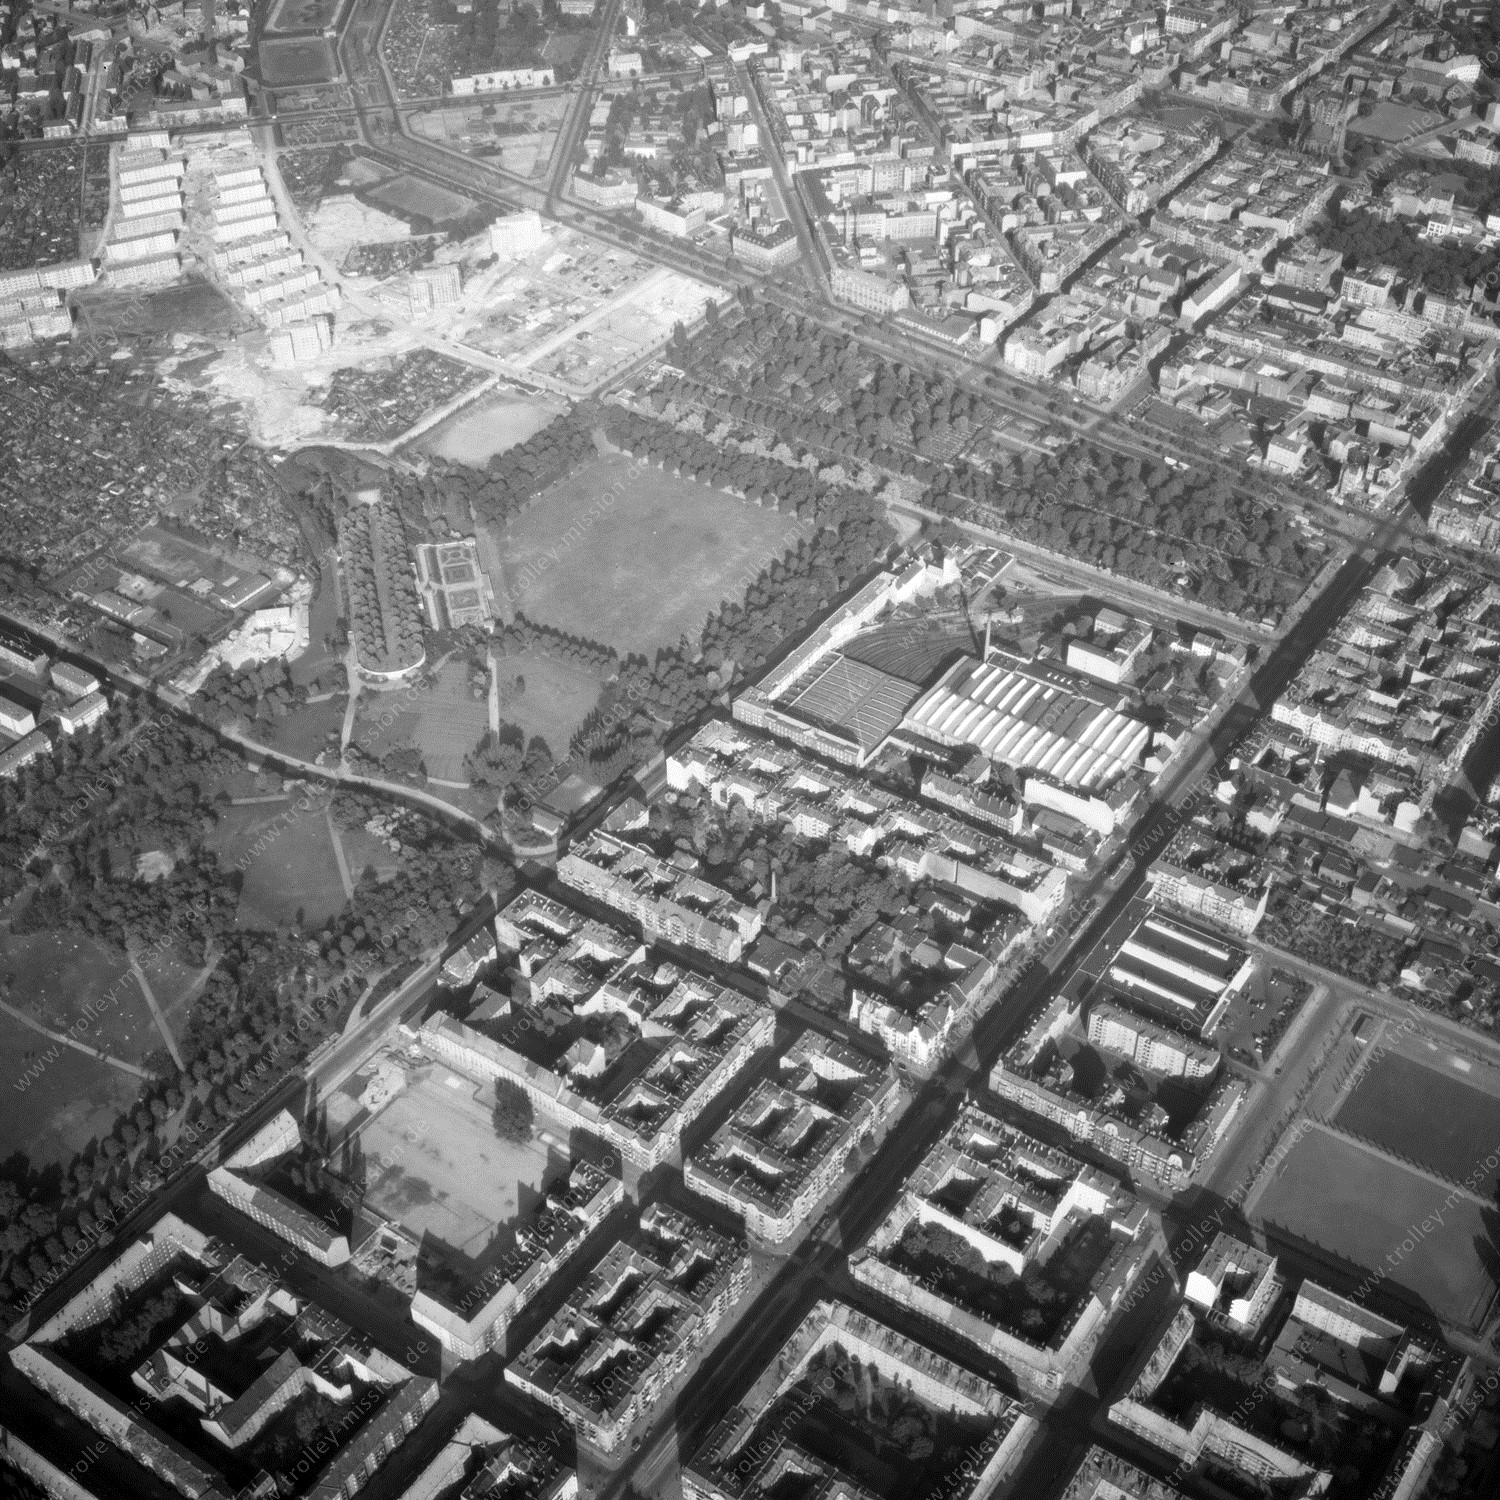 Alte Fotos und Luftbilder von Berlin - Luftbildaufnahme Nr. 13 - Historische Luftaufnahmen von West-Berlin aus dem Jahr 1954 - Flugstrecke Oscar